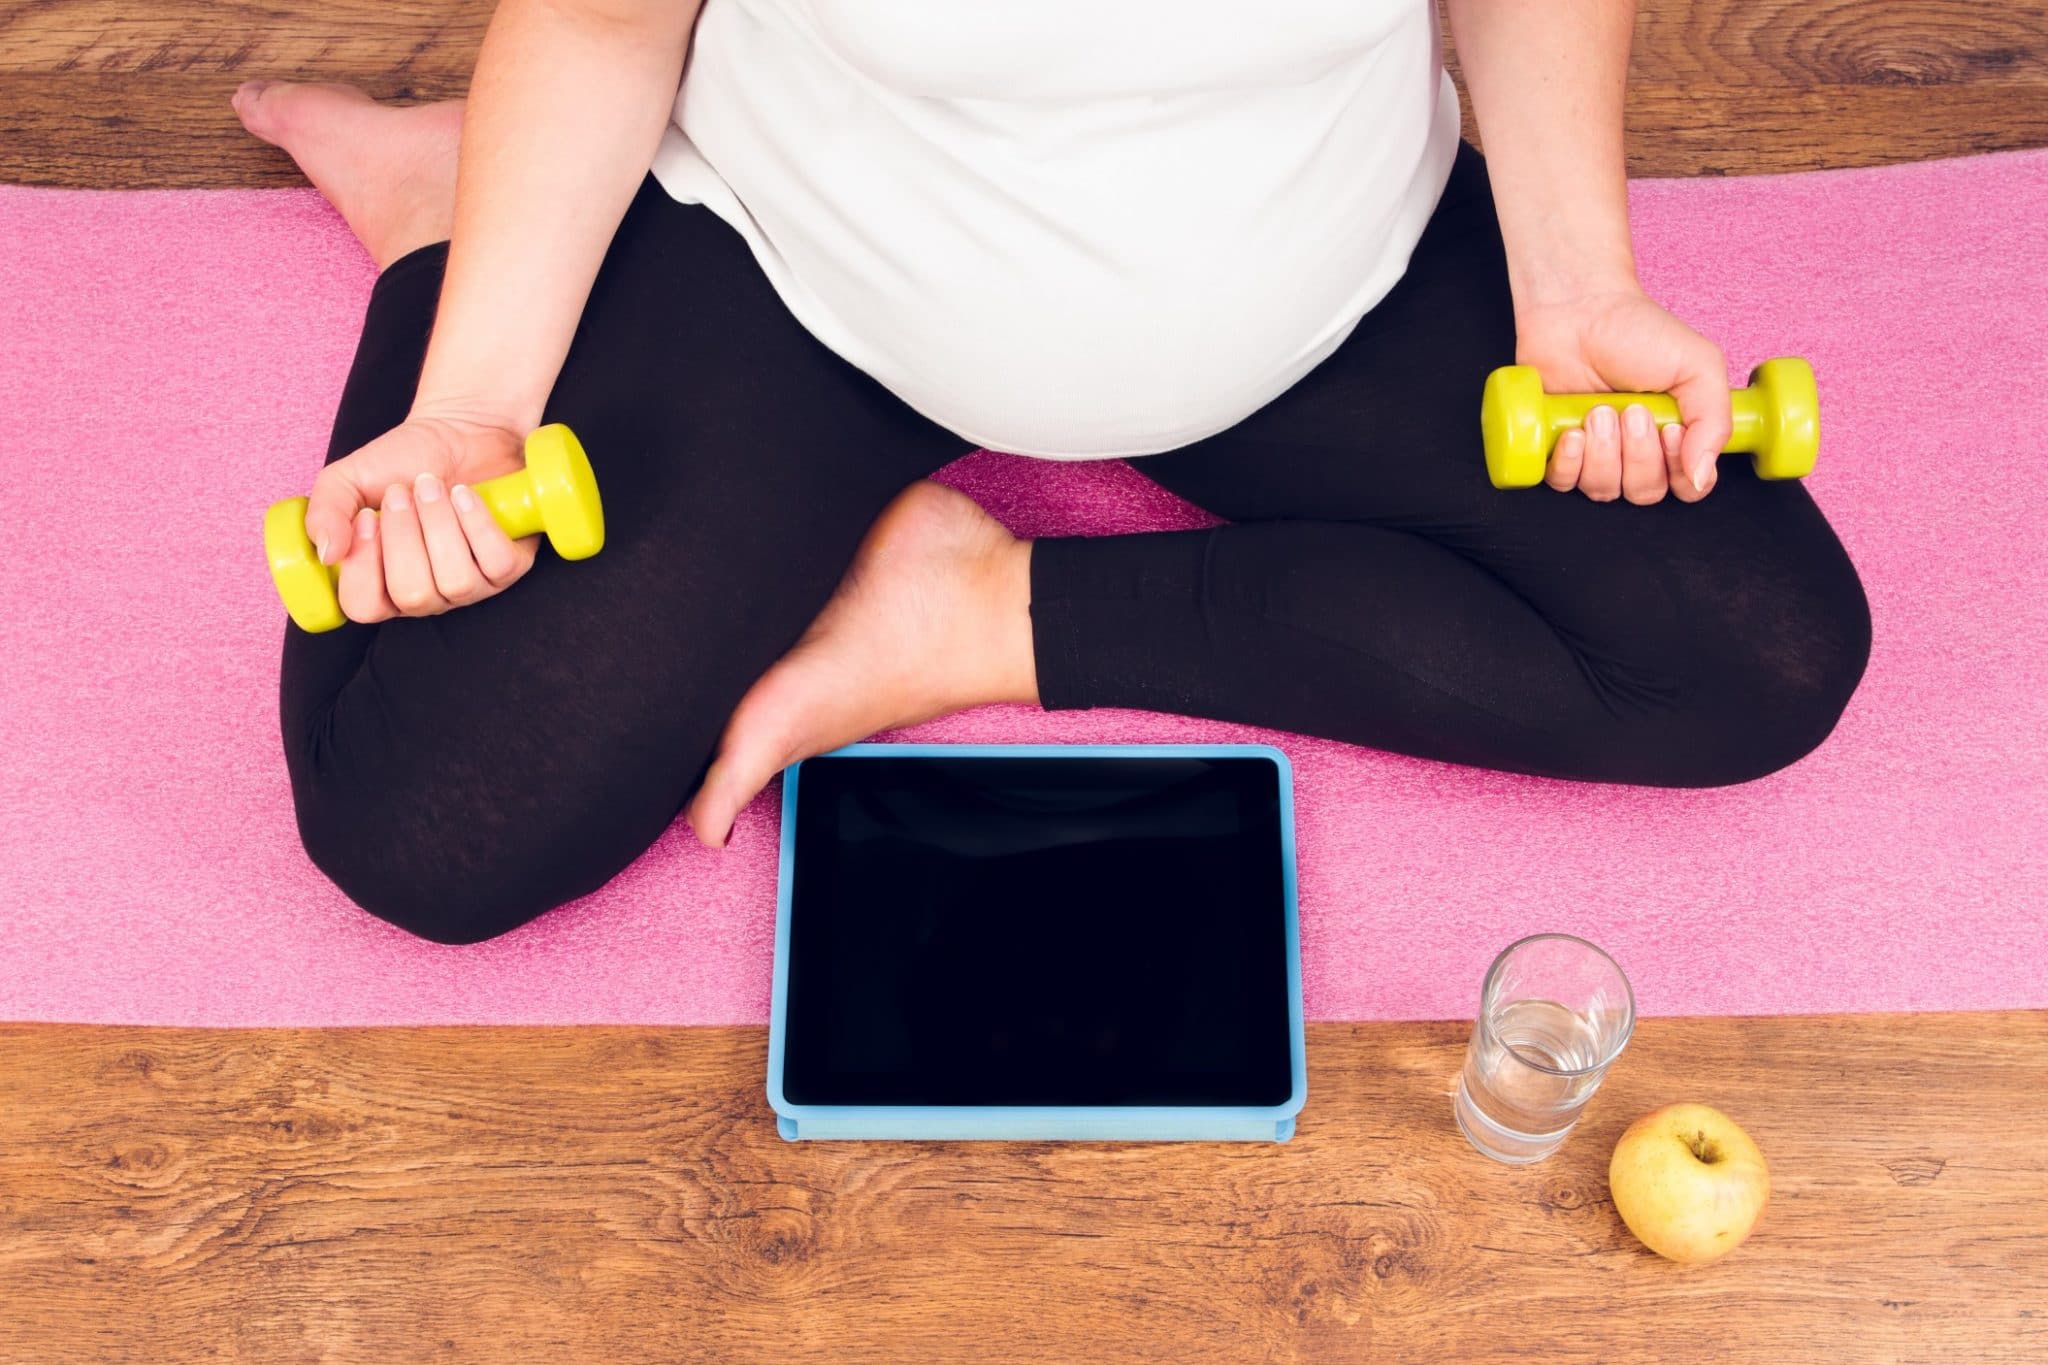 Femme enceinte assise sur un tapis de yoga avec des haltères, une tablette, un verre d'eau et une pomme.